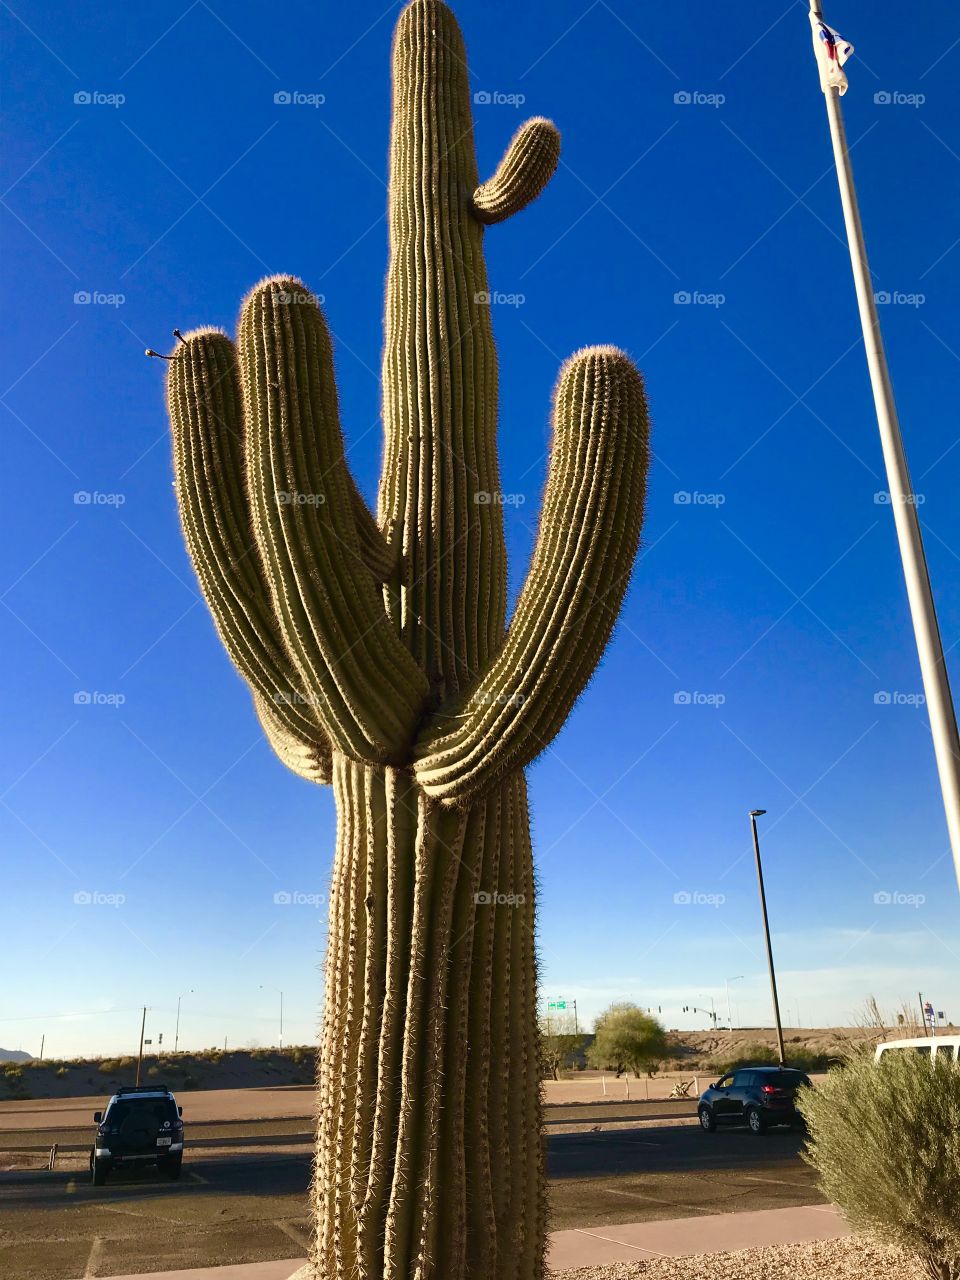 Cactus in Arizona 